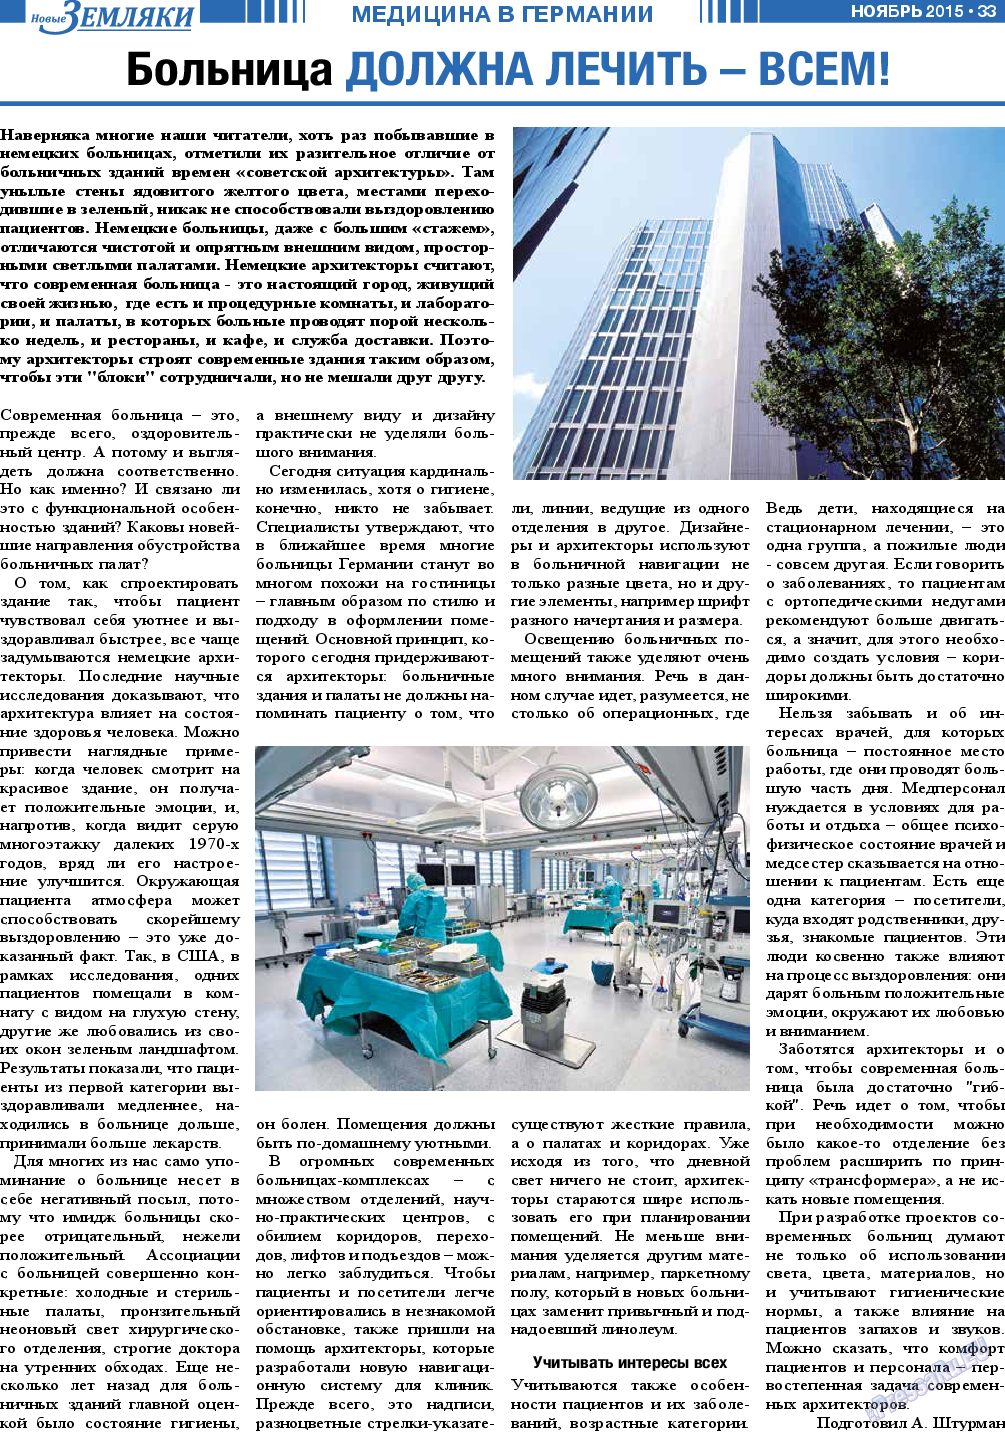 Новые Земляки, газета. 2015 №11 стр.33